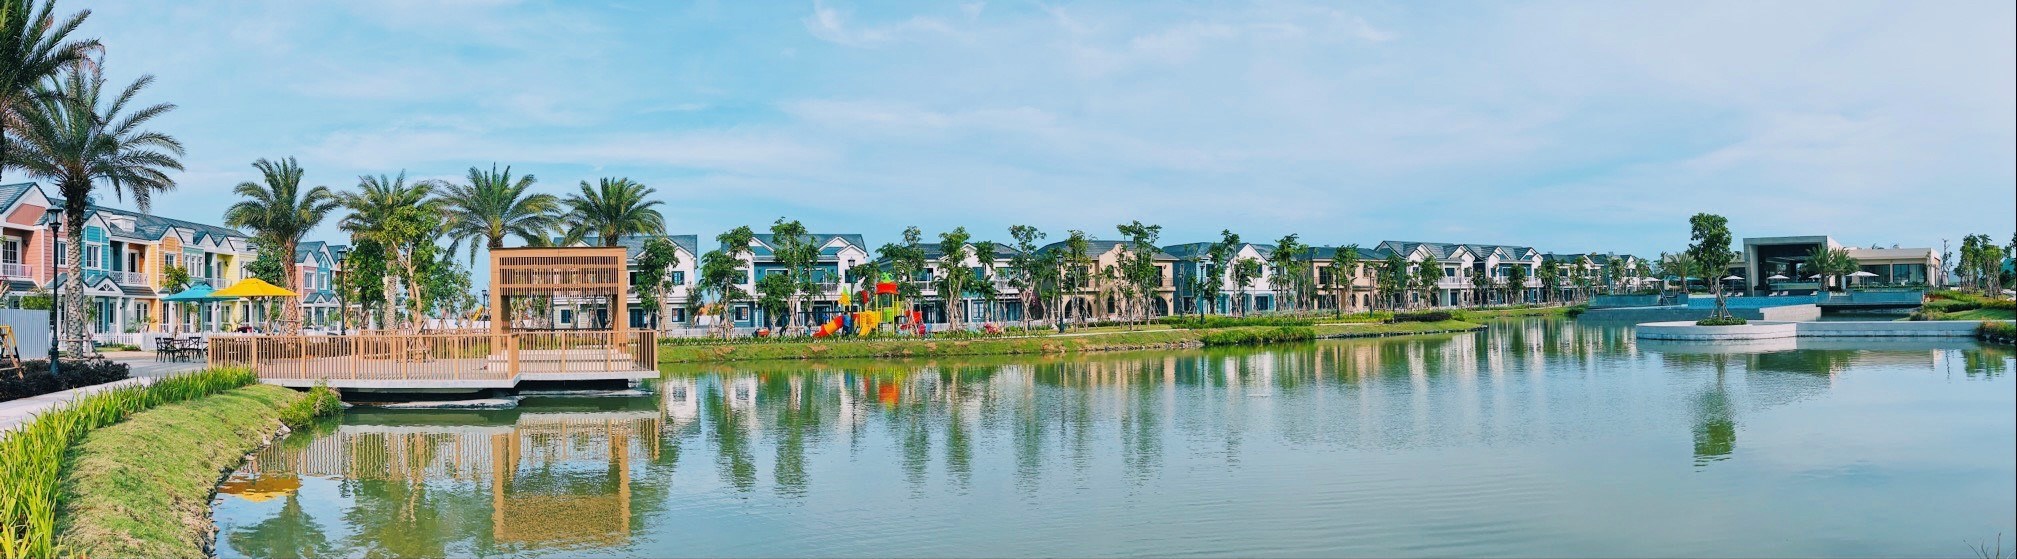 Cần bán nhà phố 5x20m, dự án Novaworld Phan Thiết, giá chỉ 3,350 tỷ